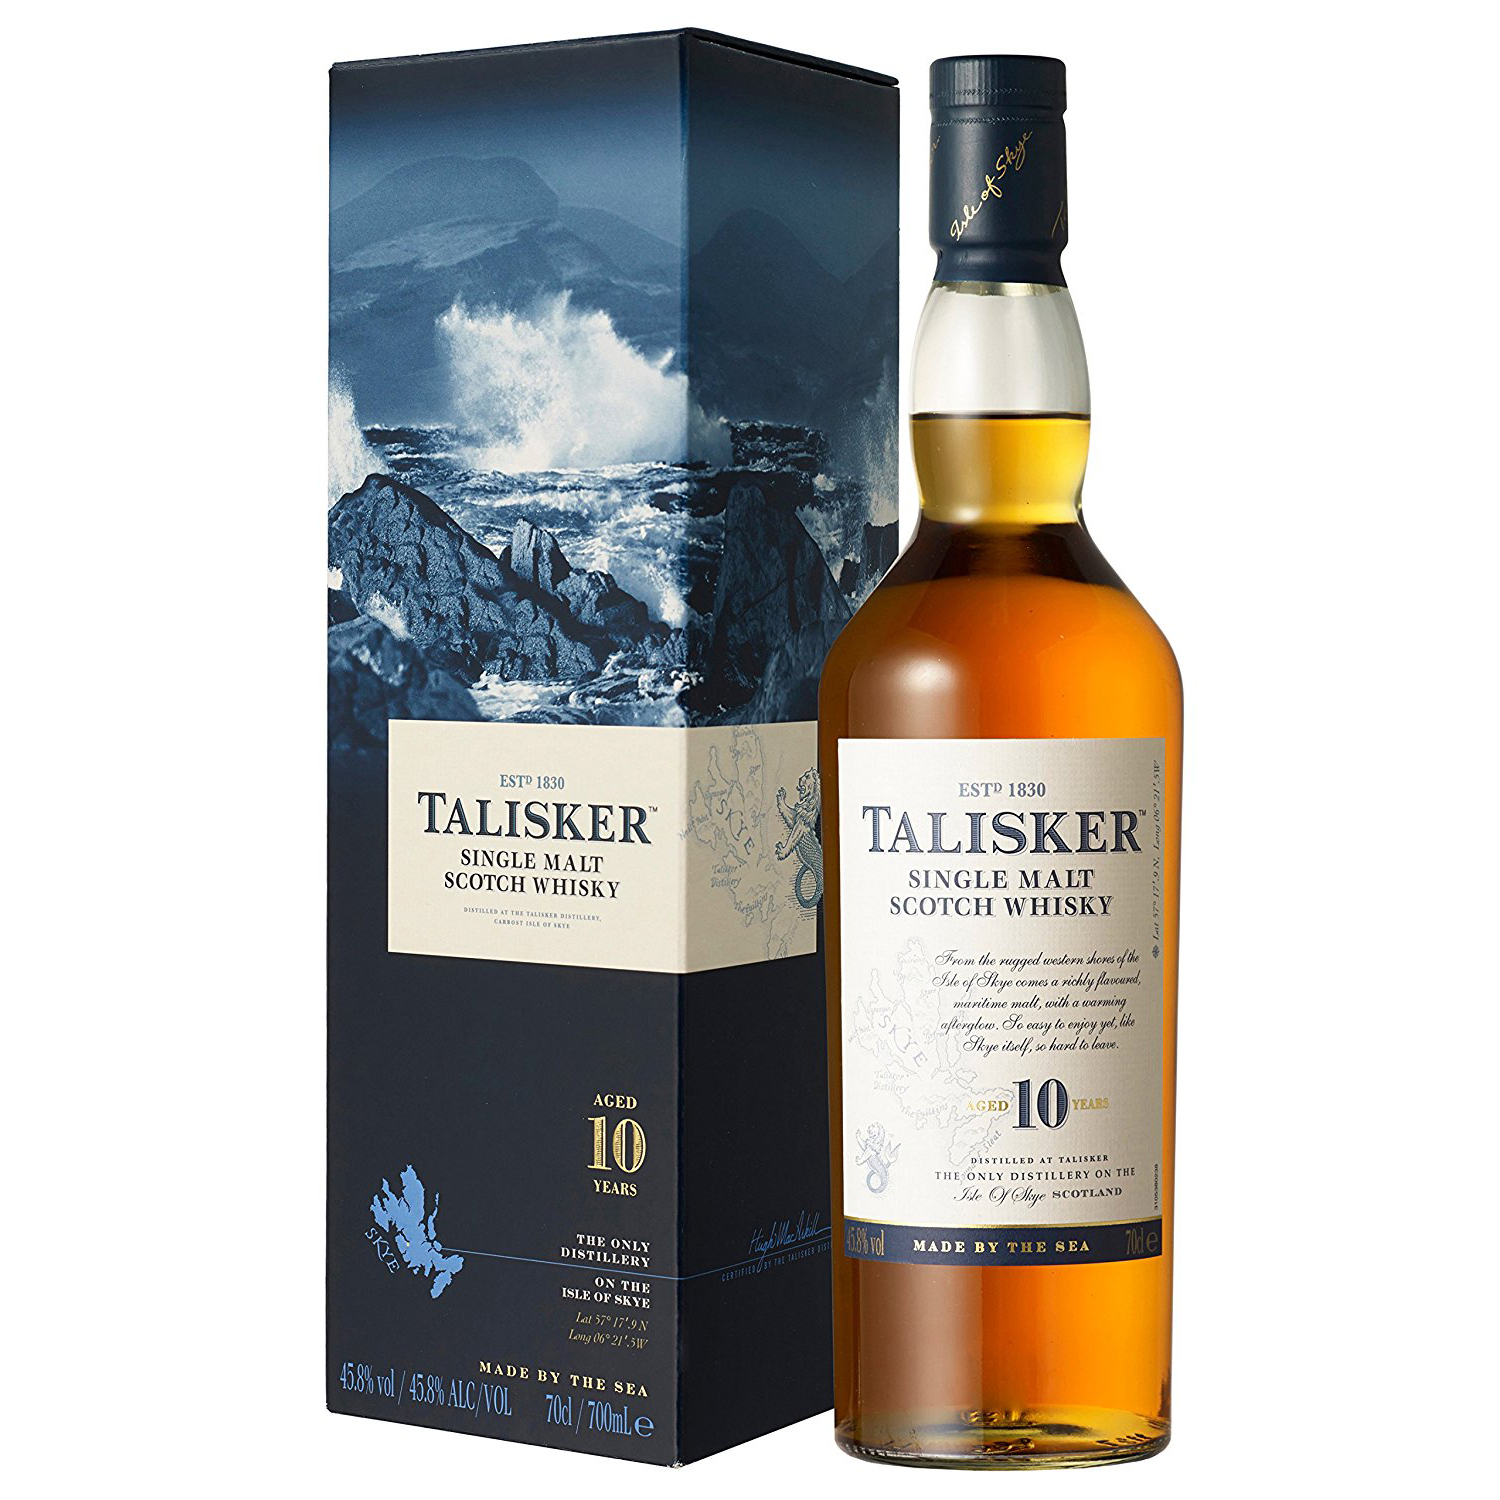 Single malt 10. Виски Single Malt 10 years. Talisker Scotch Whisky. Talisker 10. Talisker 10 Skye.